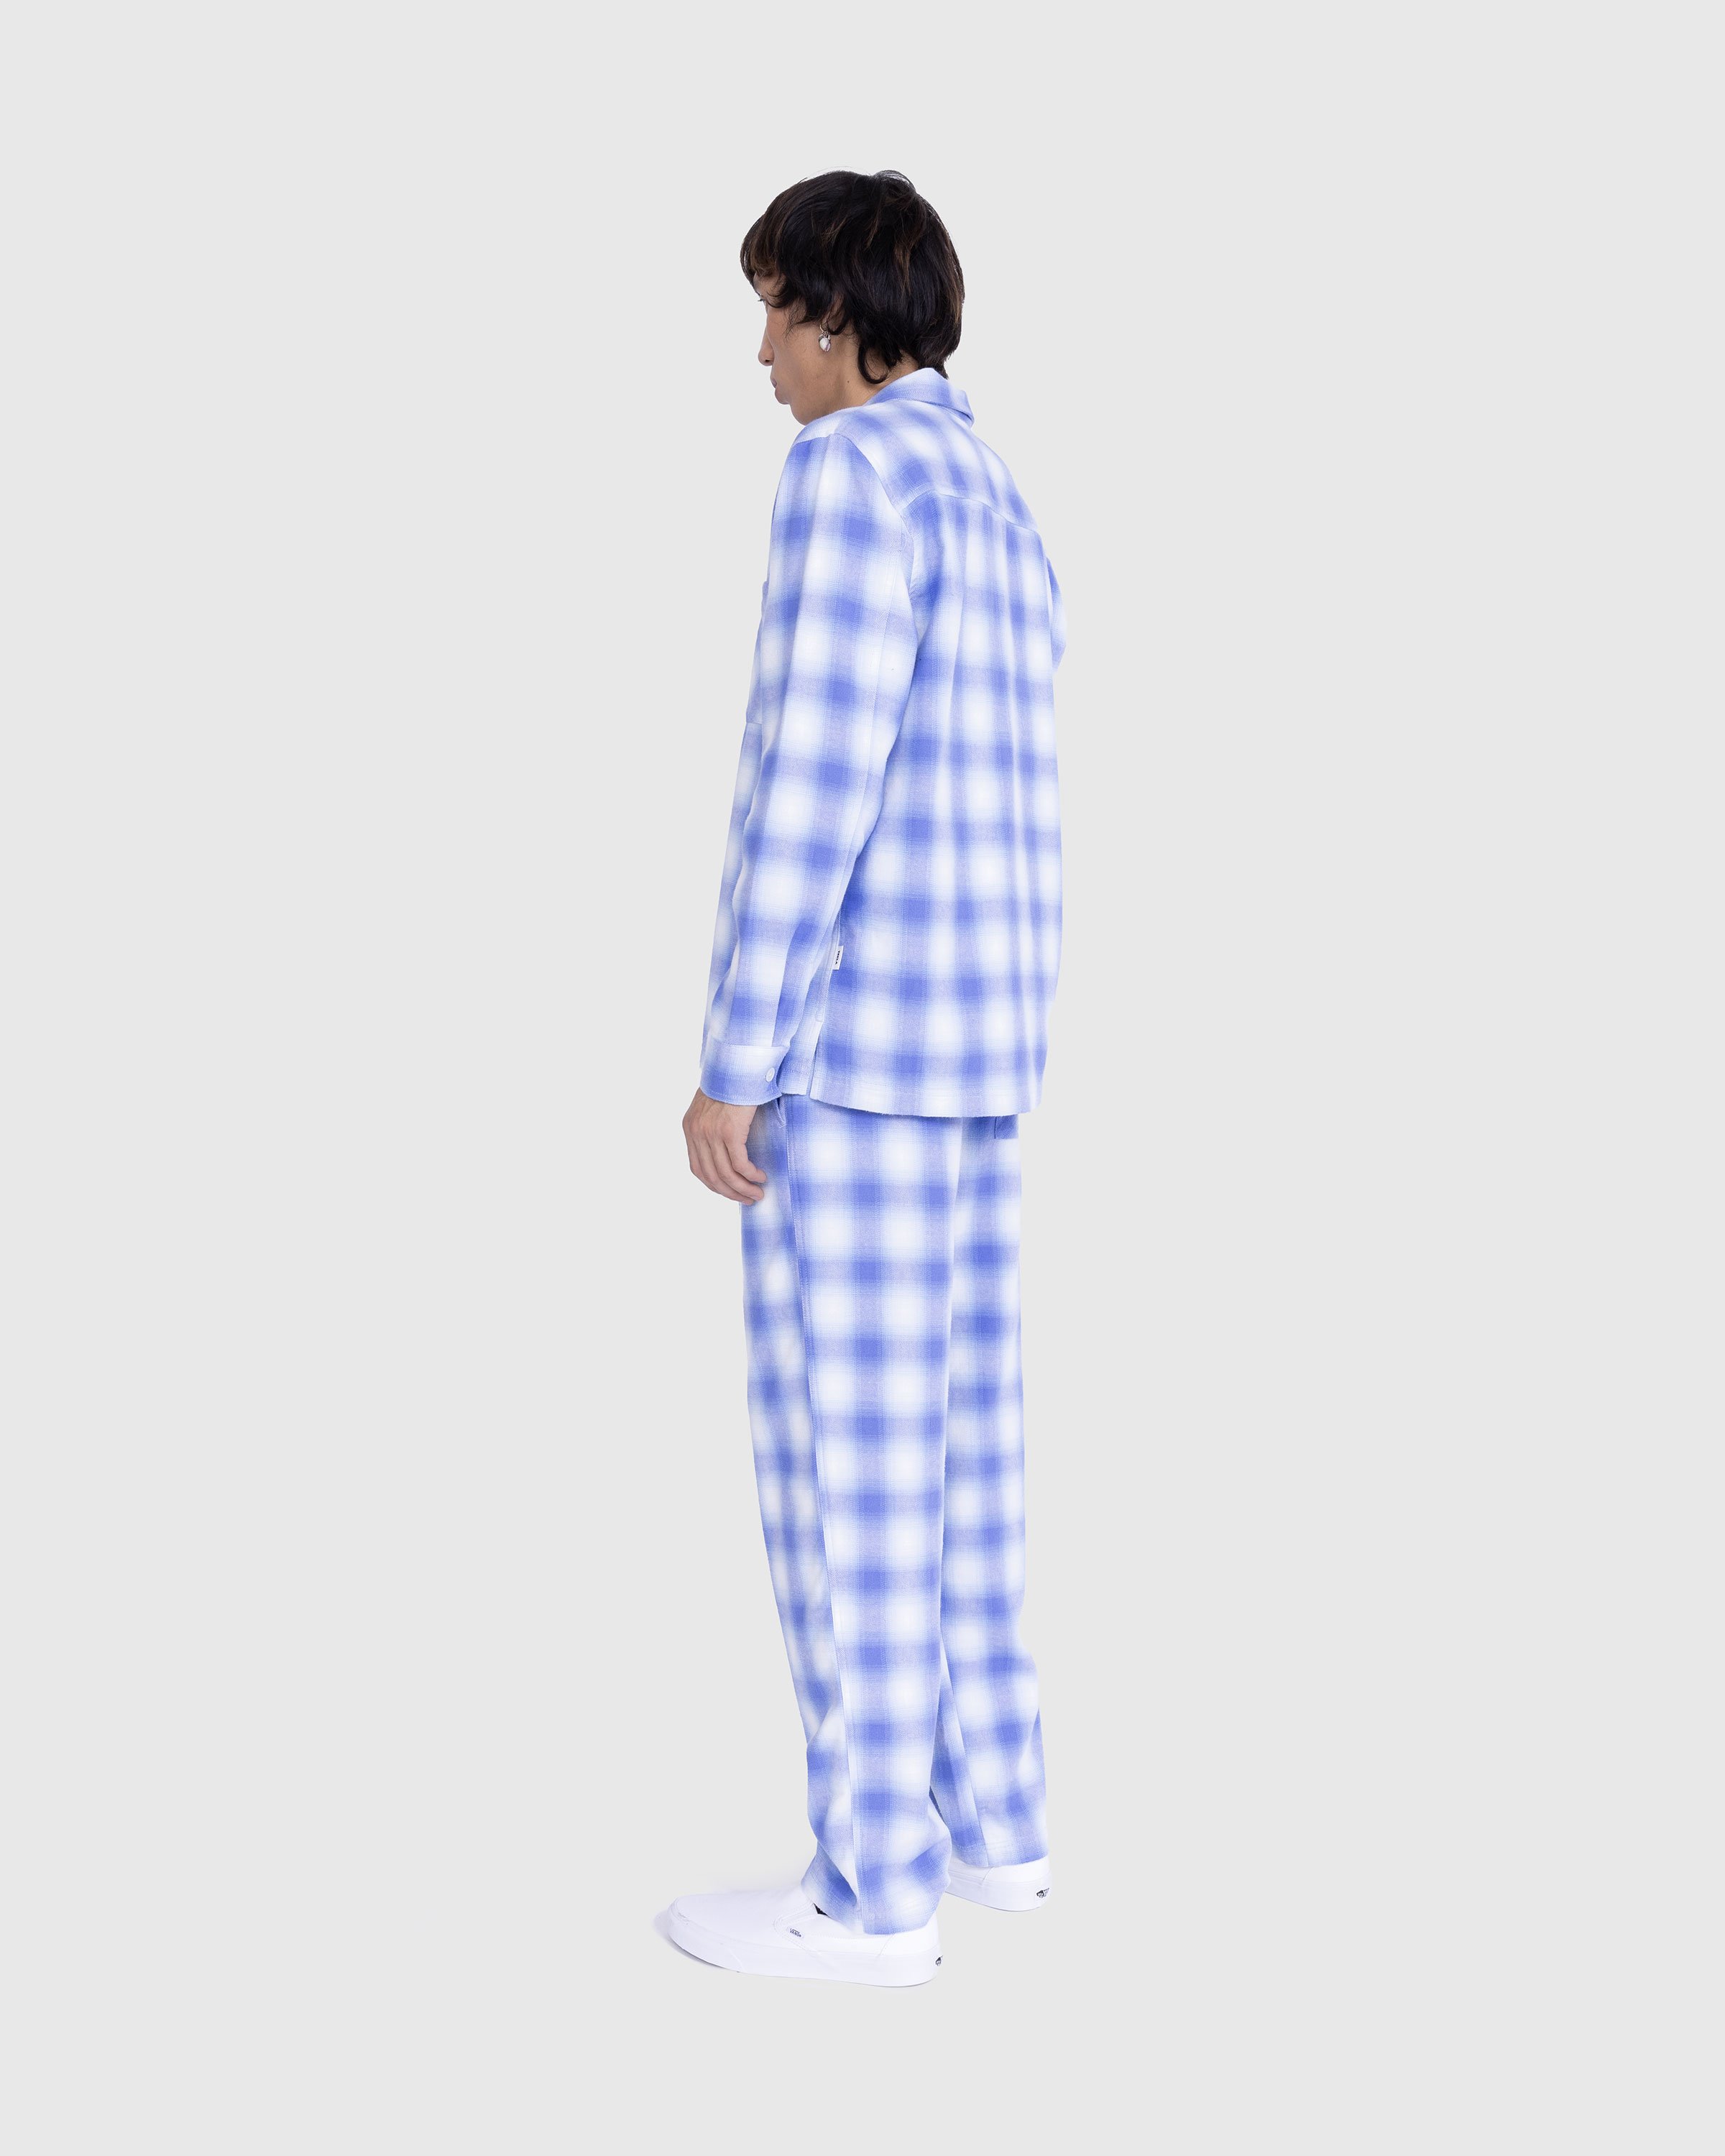 Tekla - Flannel Pyjamas Pants Light Blue Plaid - Clothing - Blue - Image 3